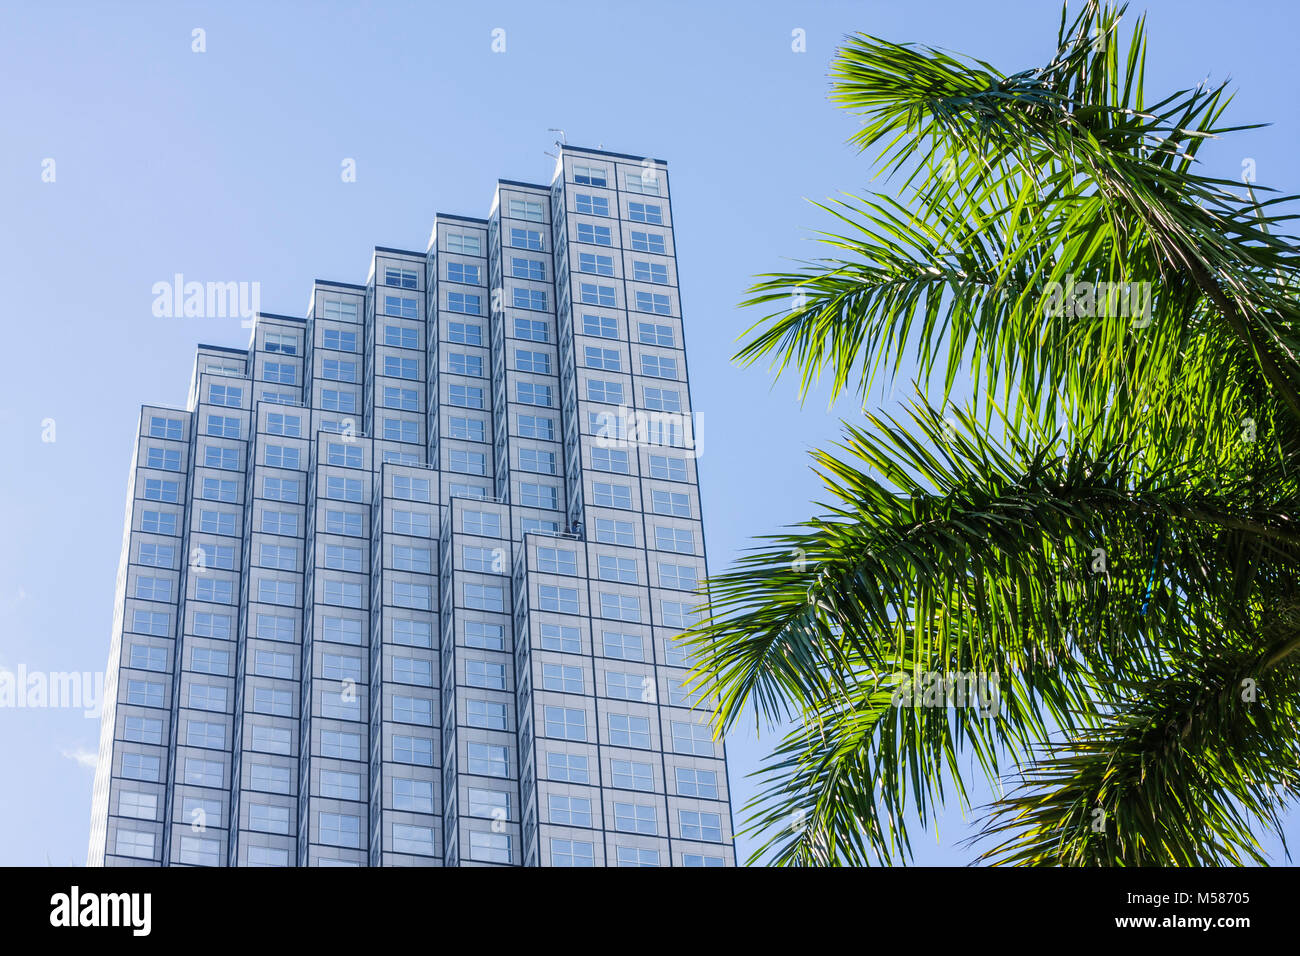 Miami Florida, Biscayne Boulevard, Centro Financiero del Sureste, Sureste, centro, rascacielos de gran altura edificios edificios edificio de oficinas, palma Foto de stock